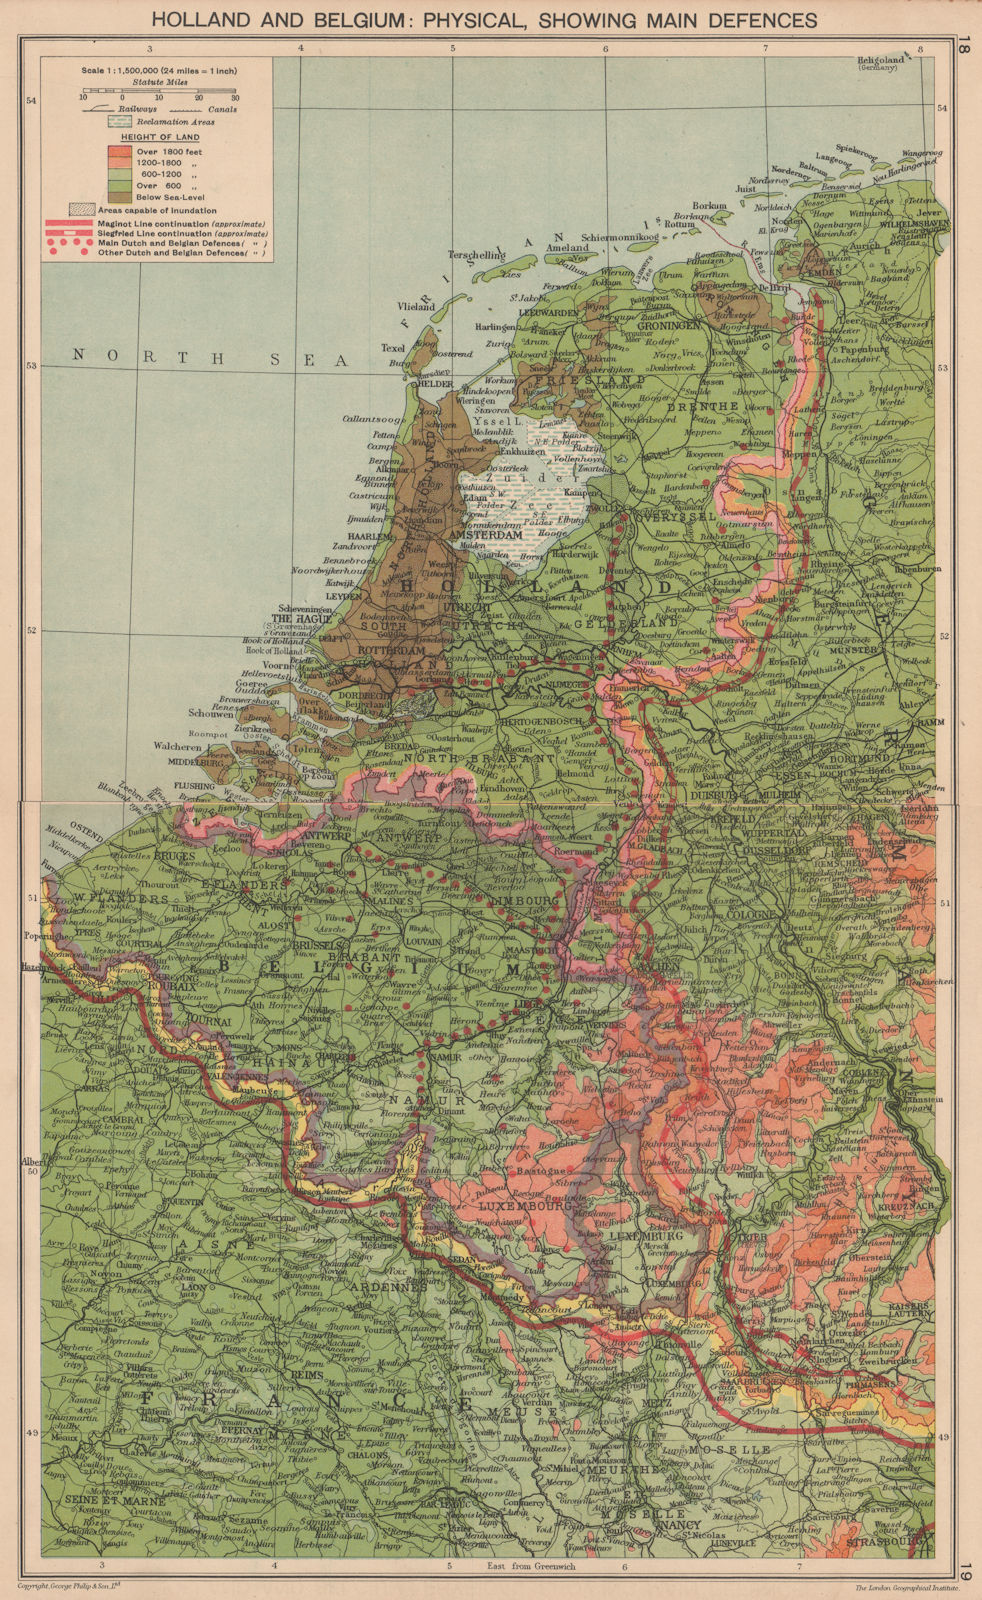 Associate Product WORLD WAR 2. Netherlands & Belgium defences. Siegfried & Maginot lines 1940 map